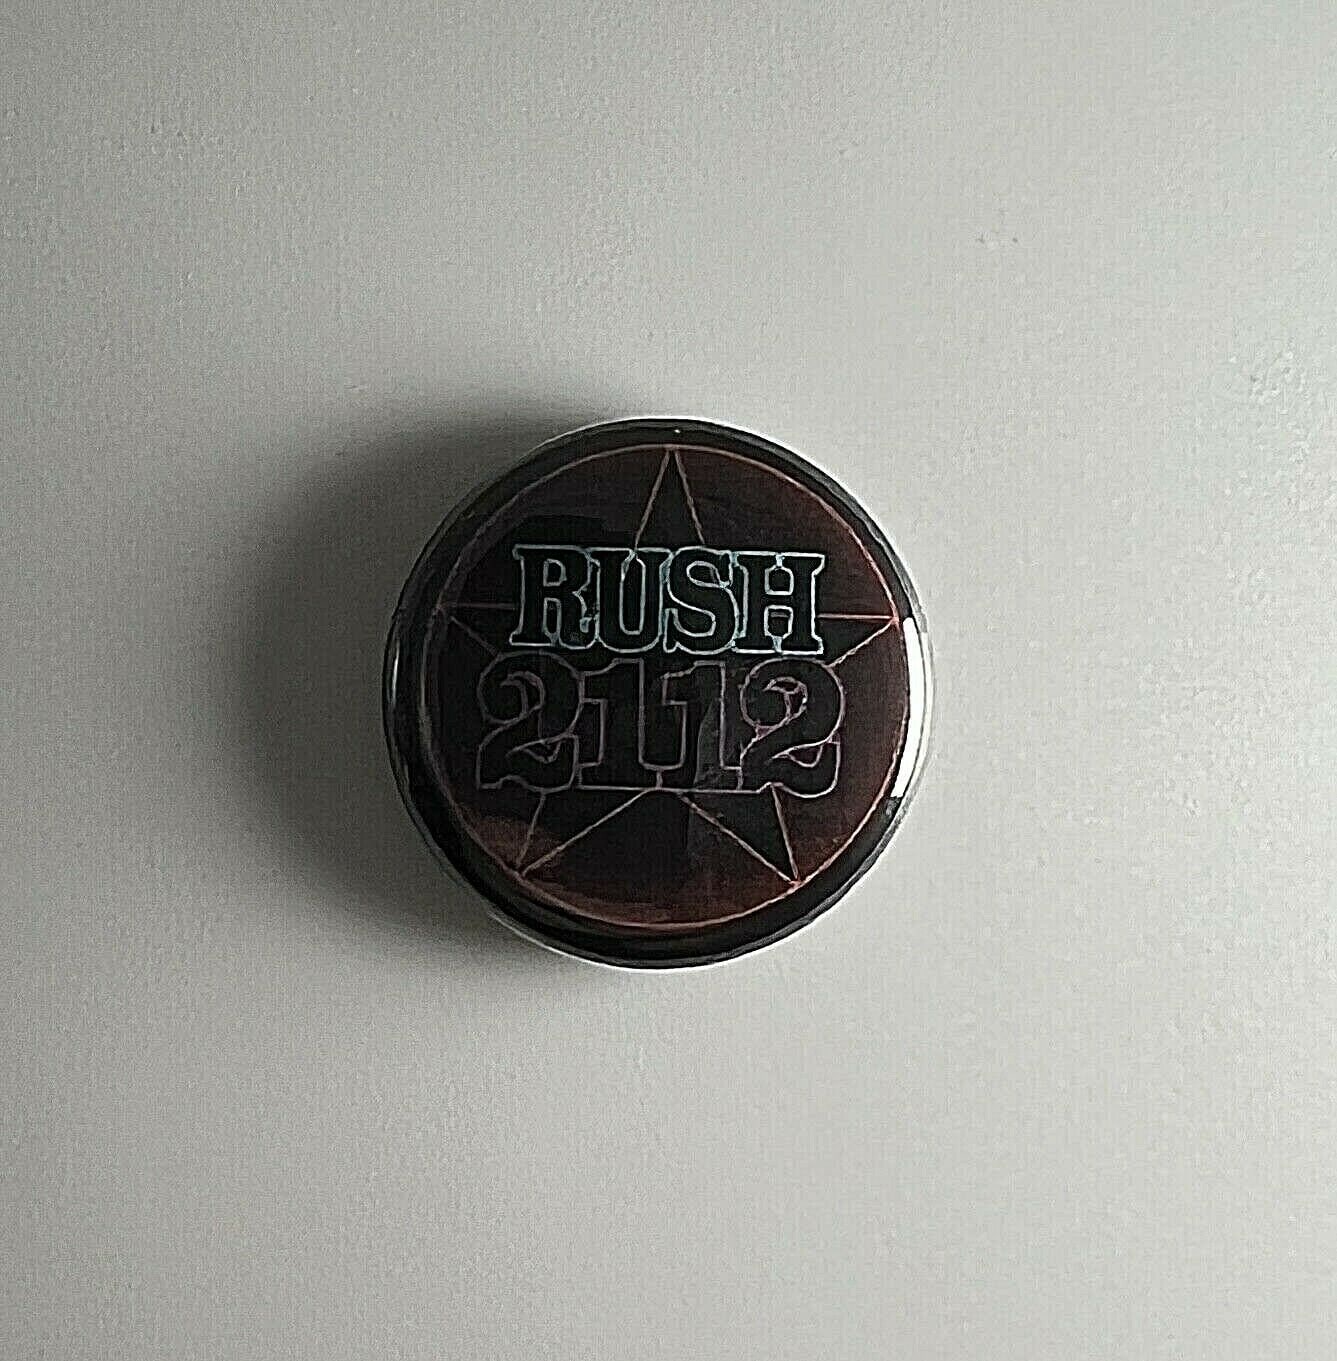 Rush 2112 1" Button R019B Anstecker Pin Starman von Heavylowmerchandise